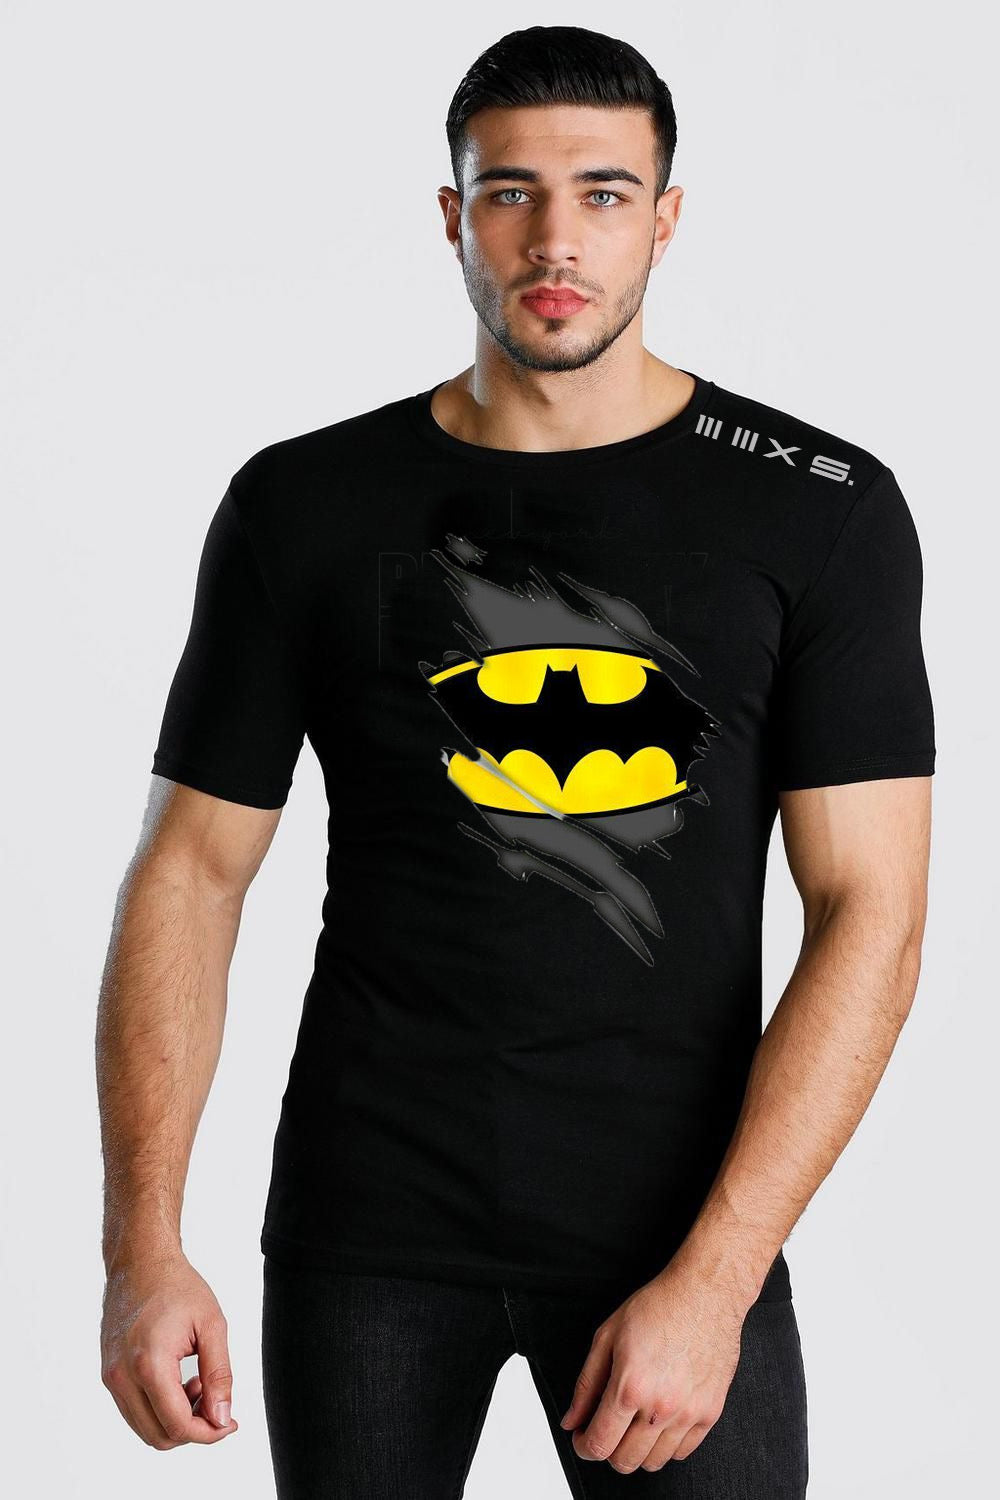 Bat-Man Black  short sleeve tshirt